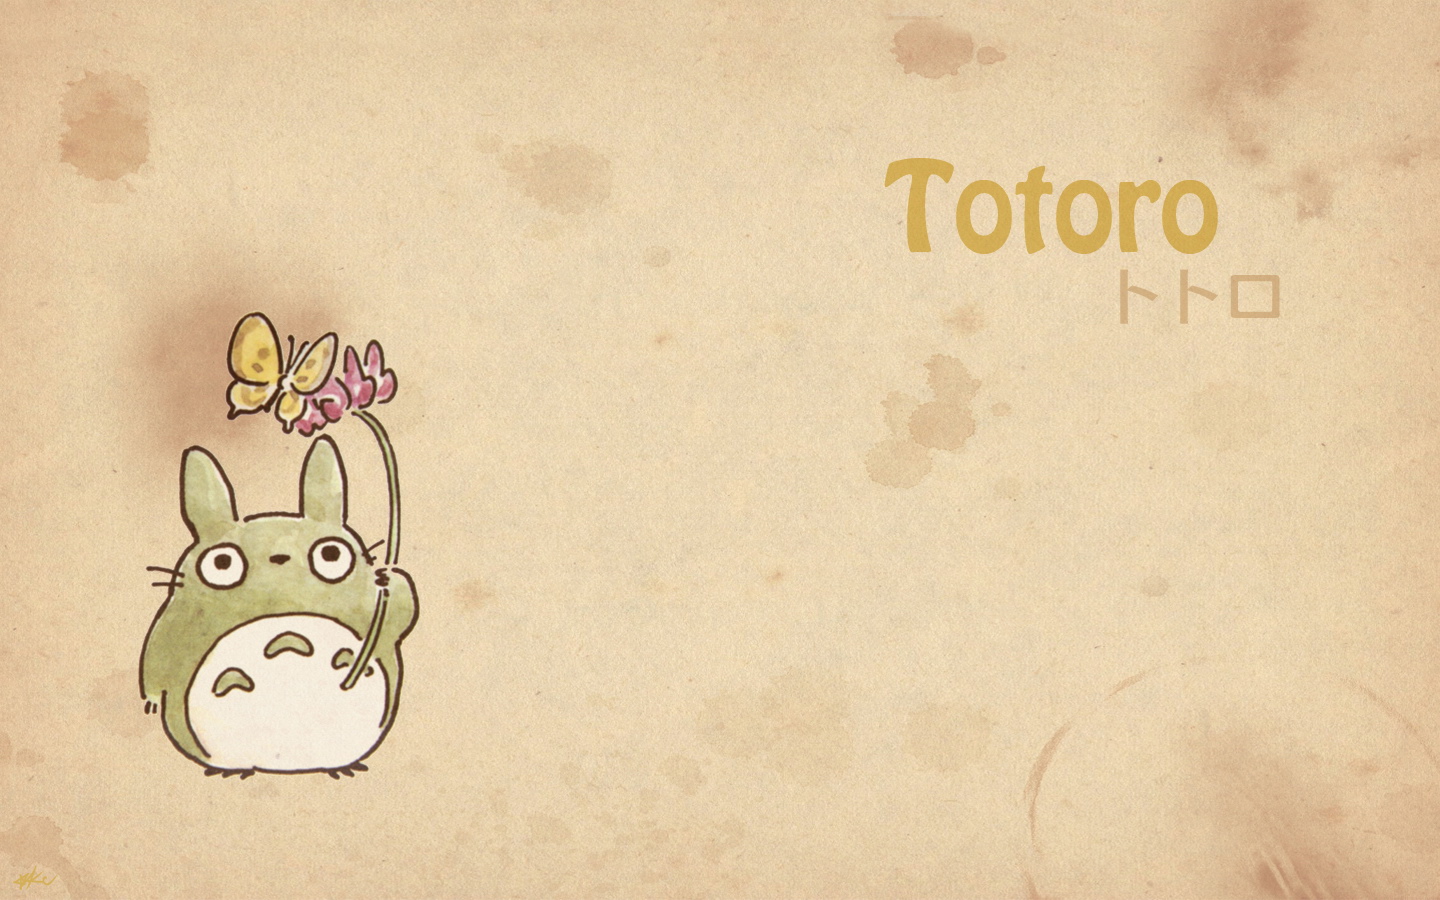 壁纸1440x900Totoro 龙猫 手绘简约版 壁纸7壁纸 Totoro（龙猫）壁纸 Totoro（龙猫）图片 Totoro（龙猫）素材 绘画壁纸 绘画图库 绘画图片素材桌面壁纸